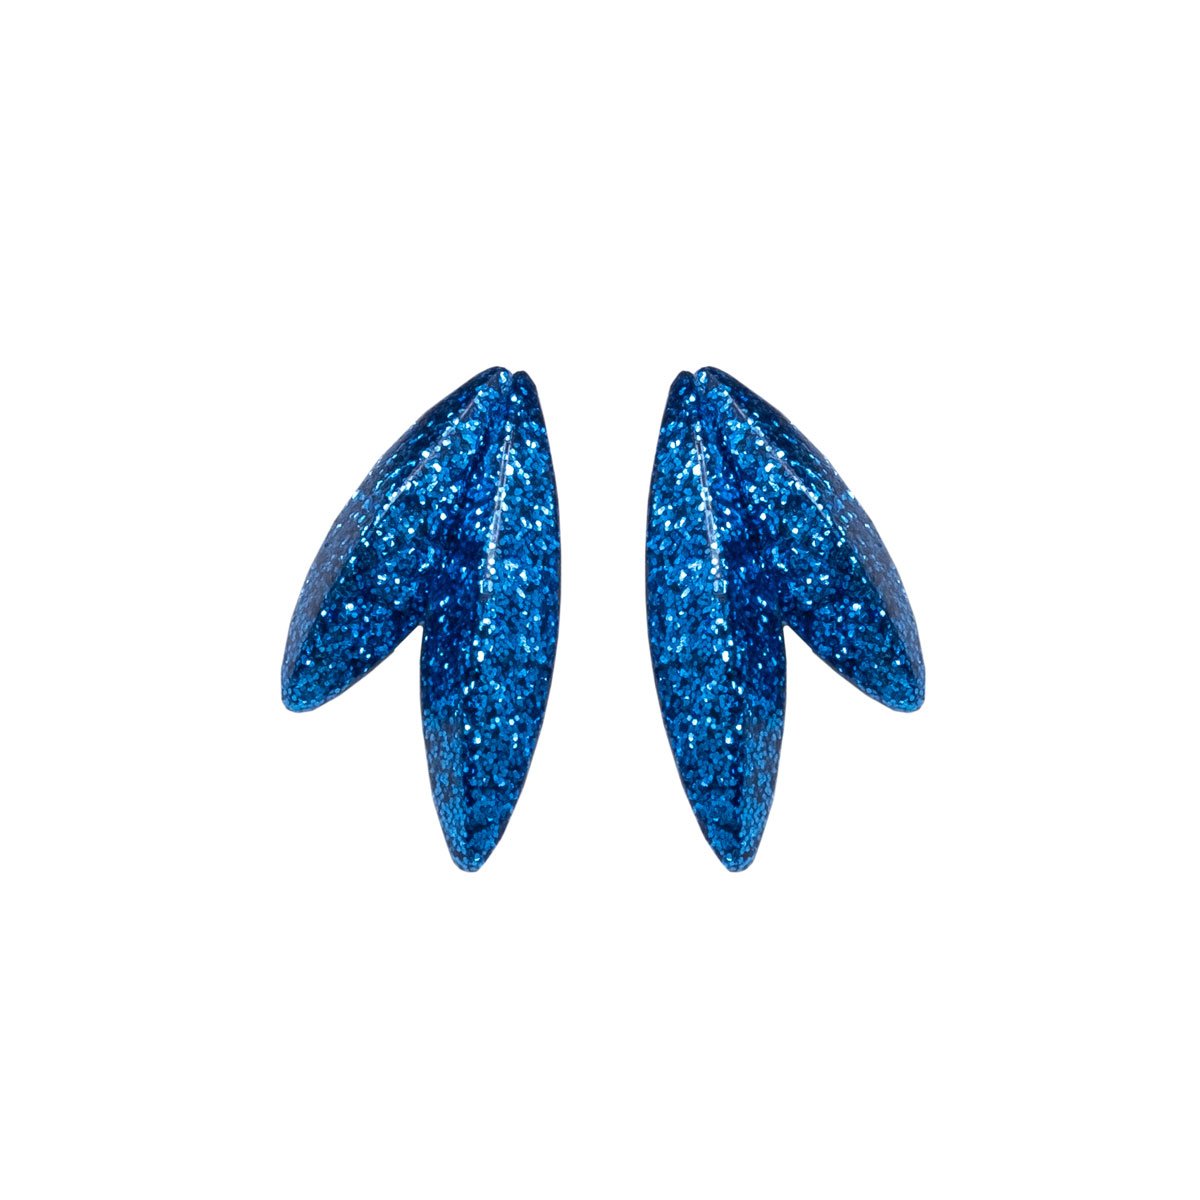 Twin-LEAVES ✕ Shine earrings, sky blue